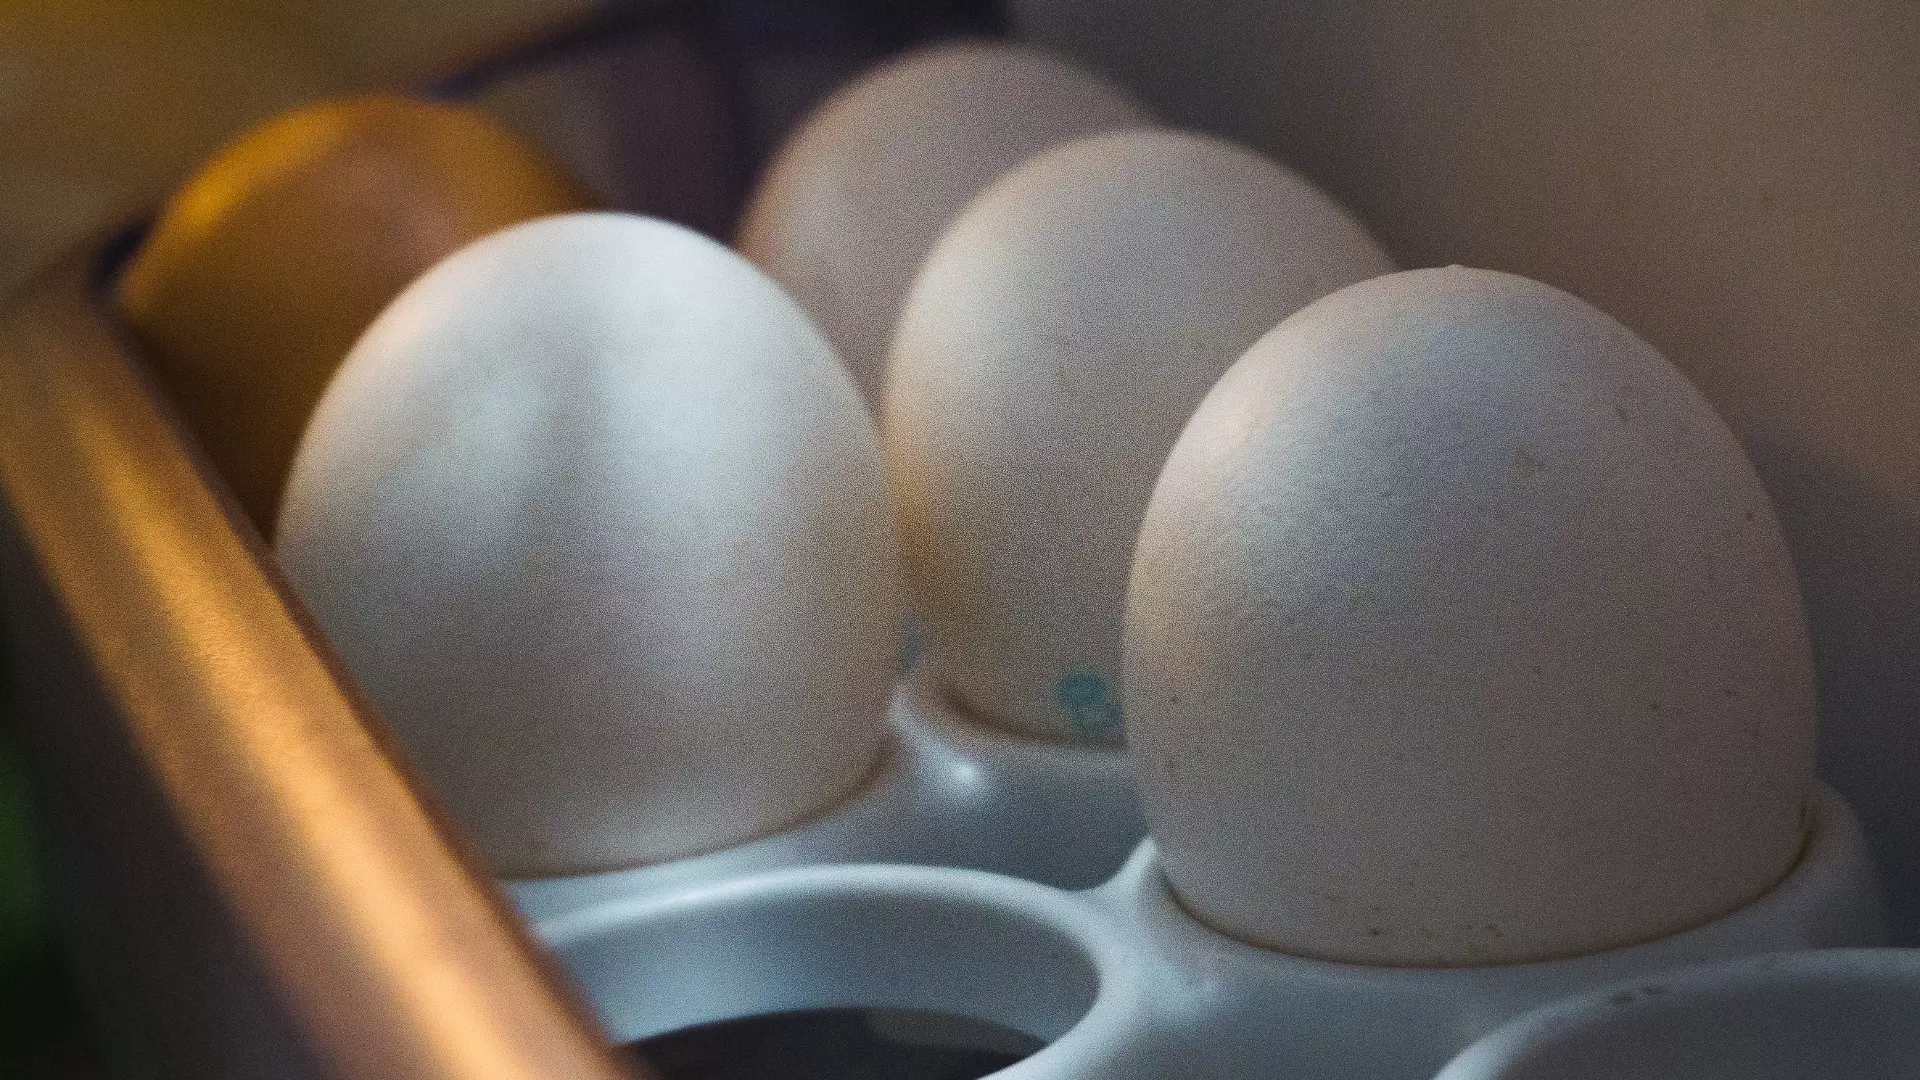 Снижение цен на яйца в РФ ожидается после Нового года